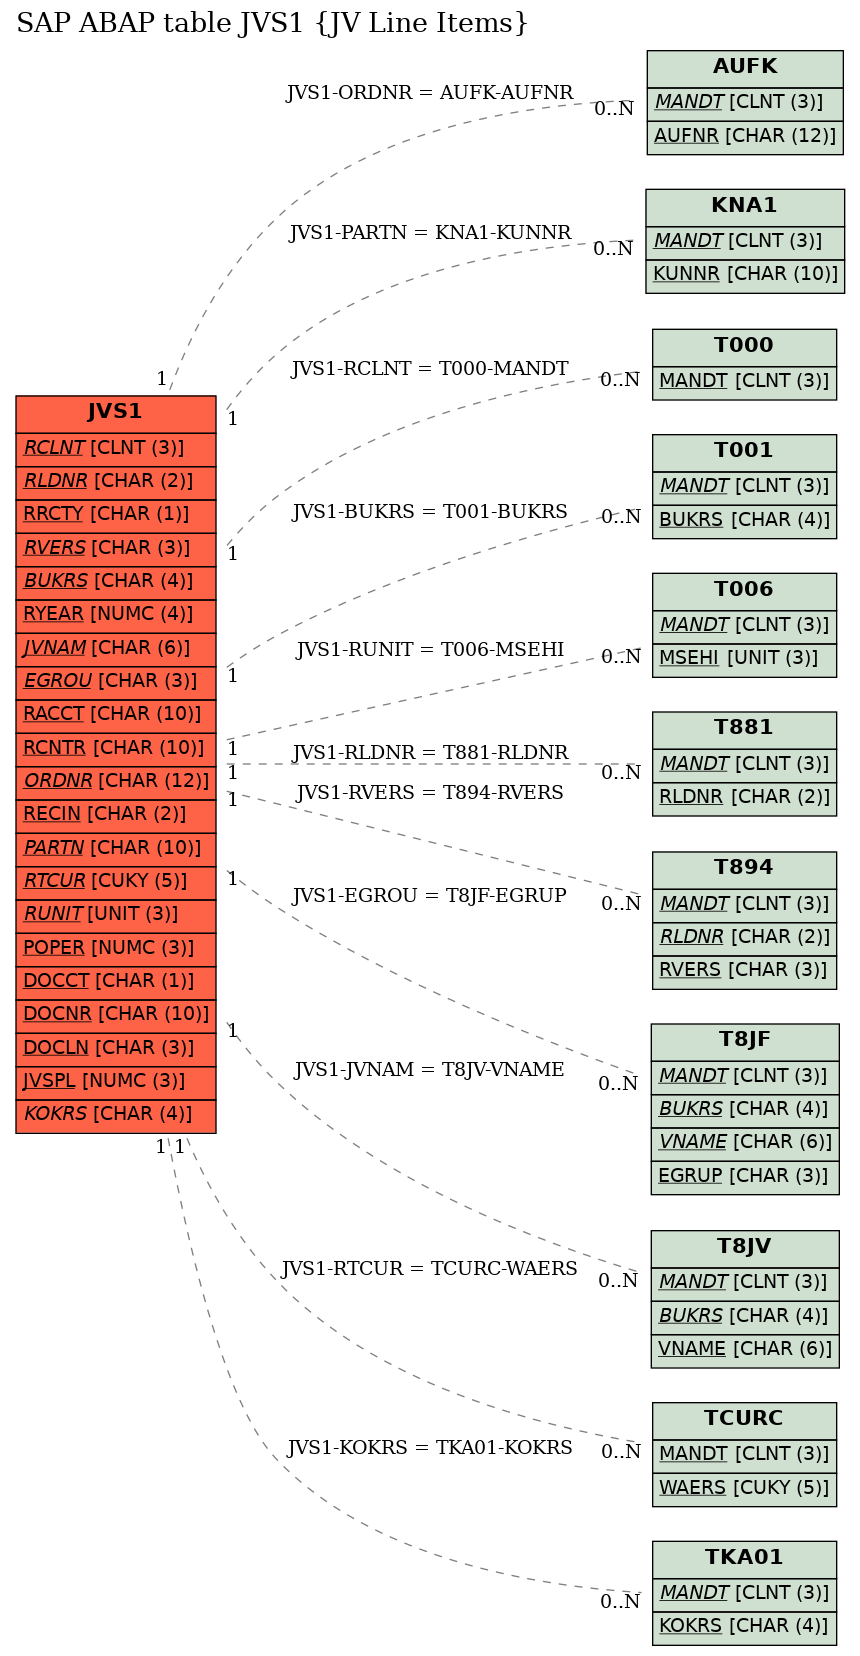 E-R Diagram for table JVS1 (JV Line Items)